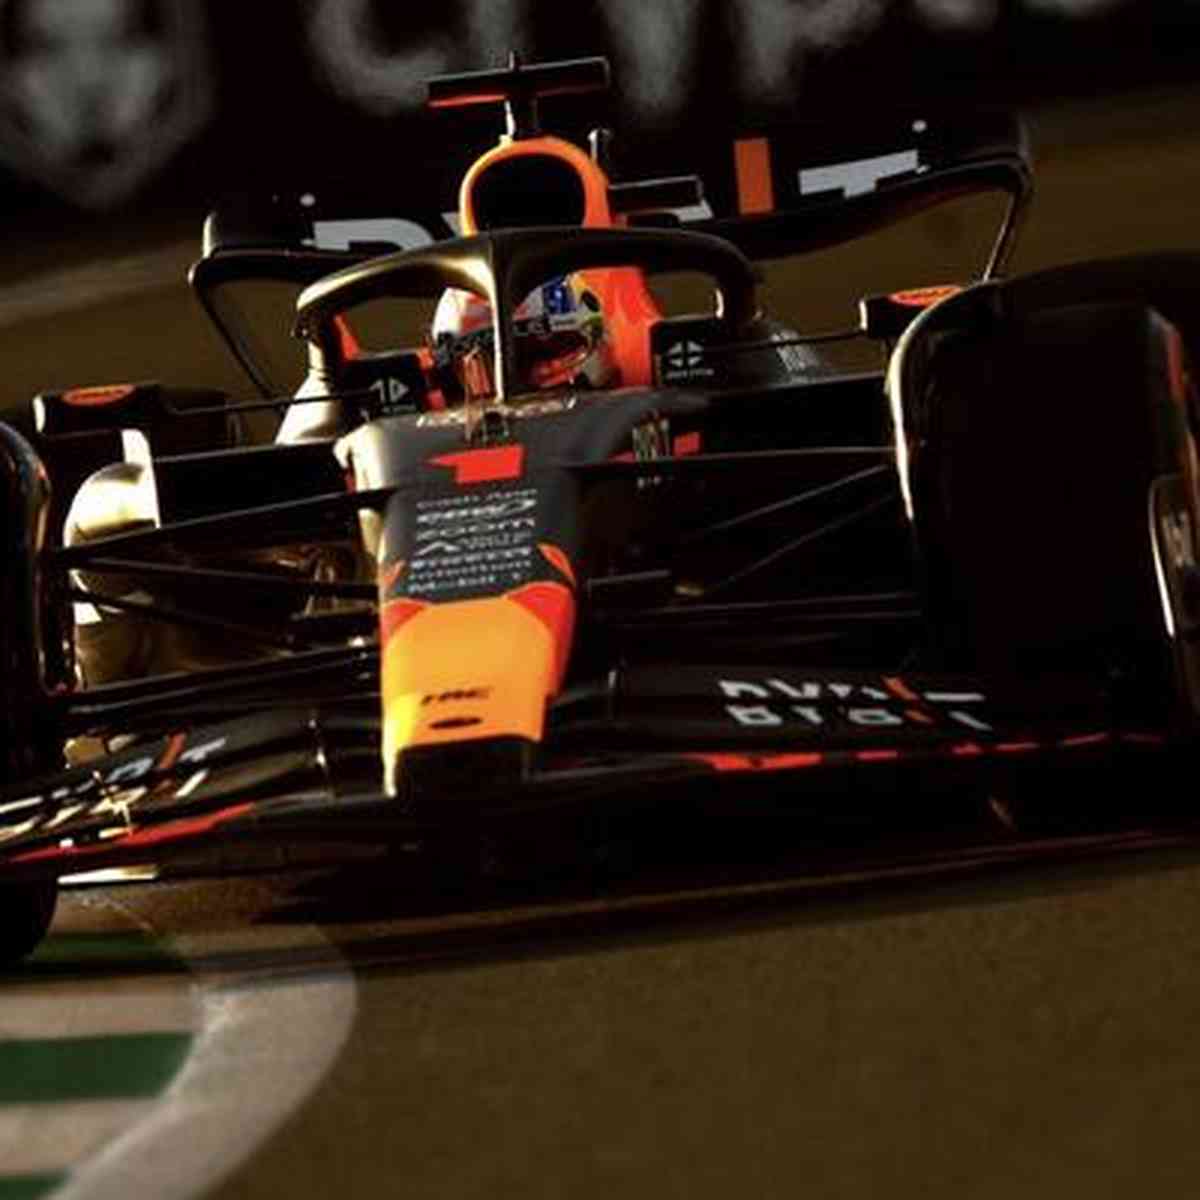 F1 2022: como assistir aos treinos e ao GP da Arábia Saudita na